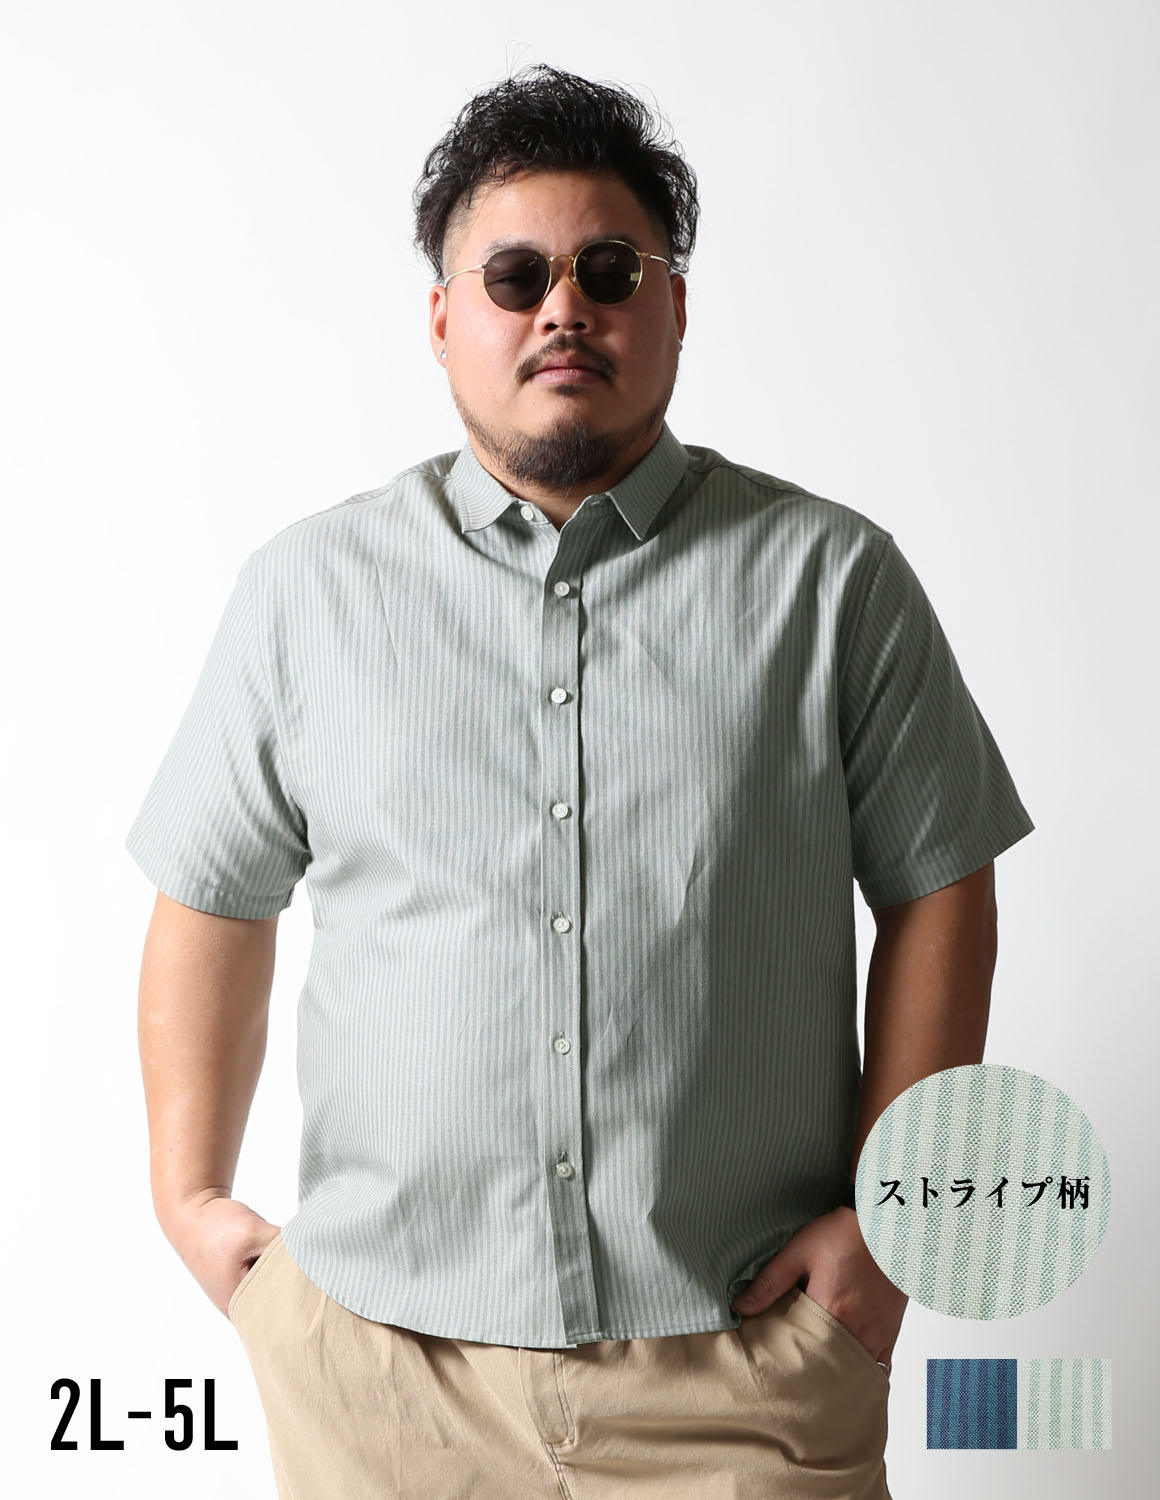 【大きいサイズ メンズ】白鯨 半袖シャツ classic 日本人男性(平均171cm)のための 感激丈 カジュアルシャツ 2L/3L/4L/5L/